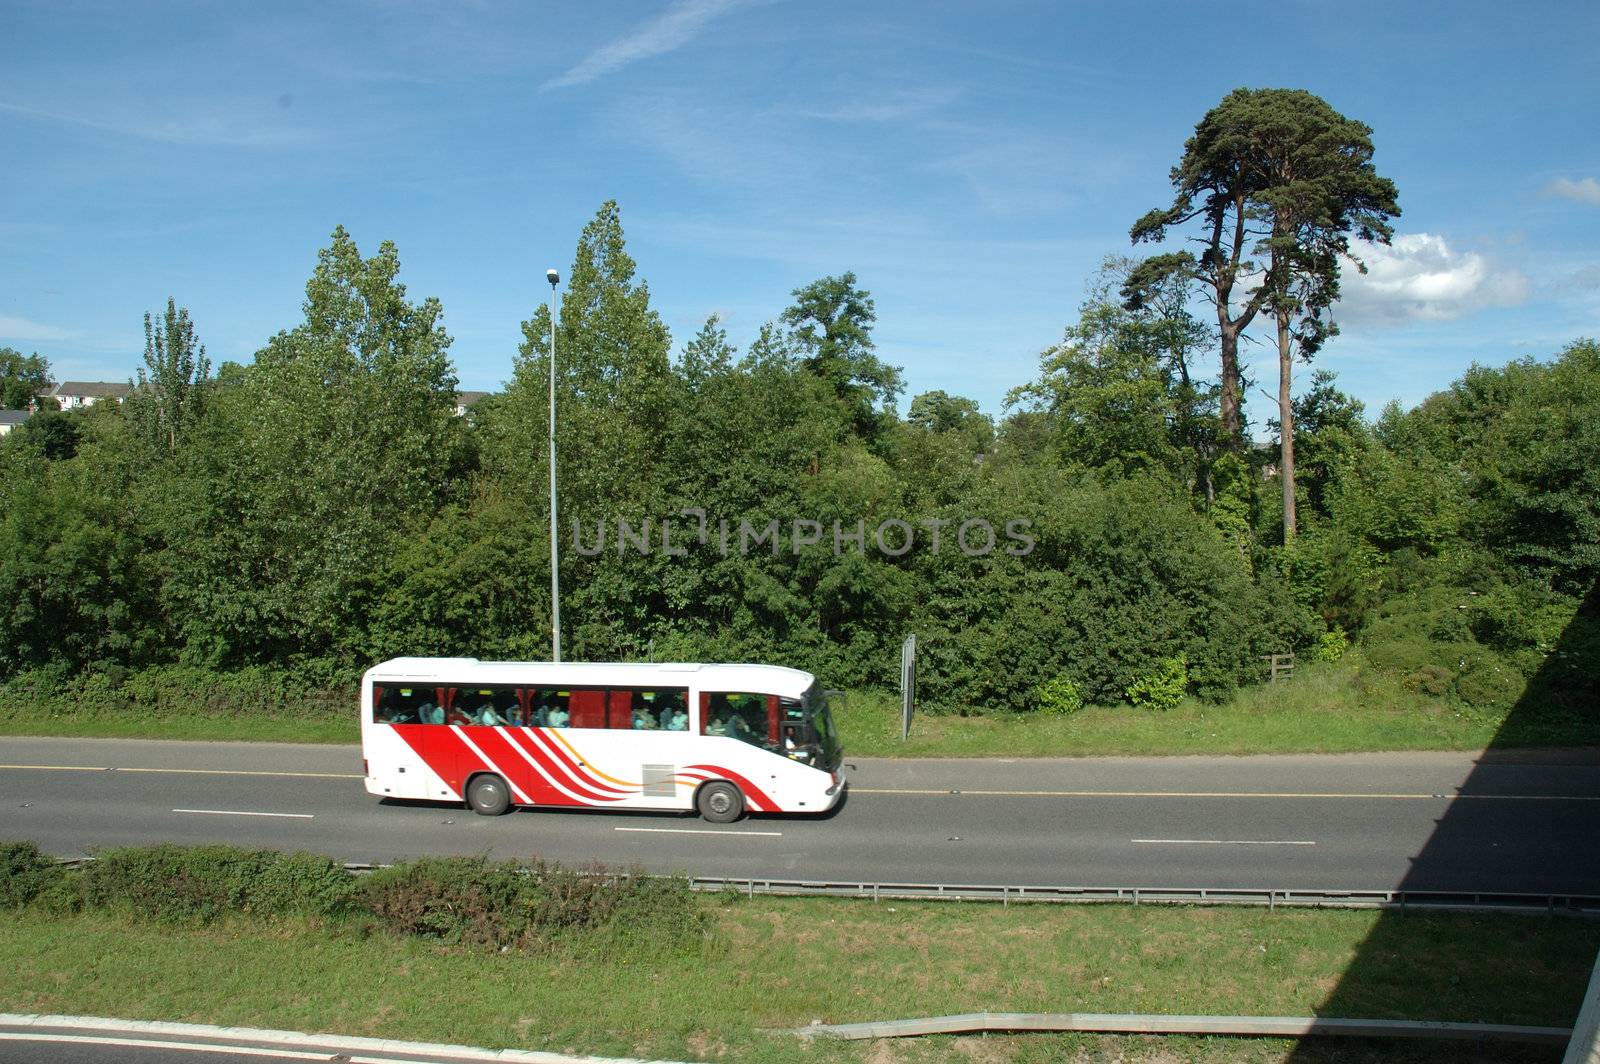 Bus on Motorway by sjeacle